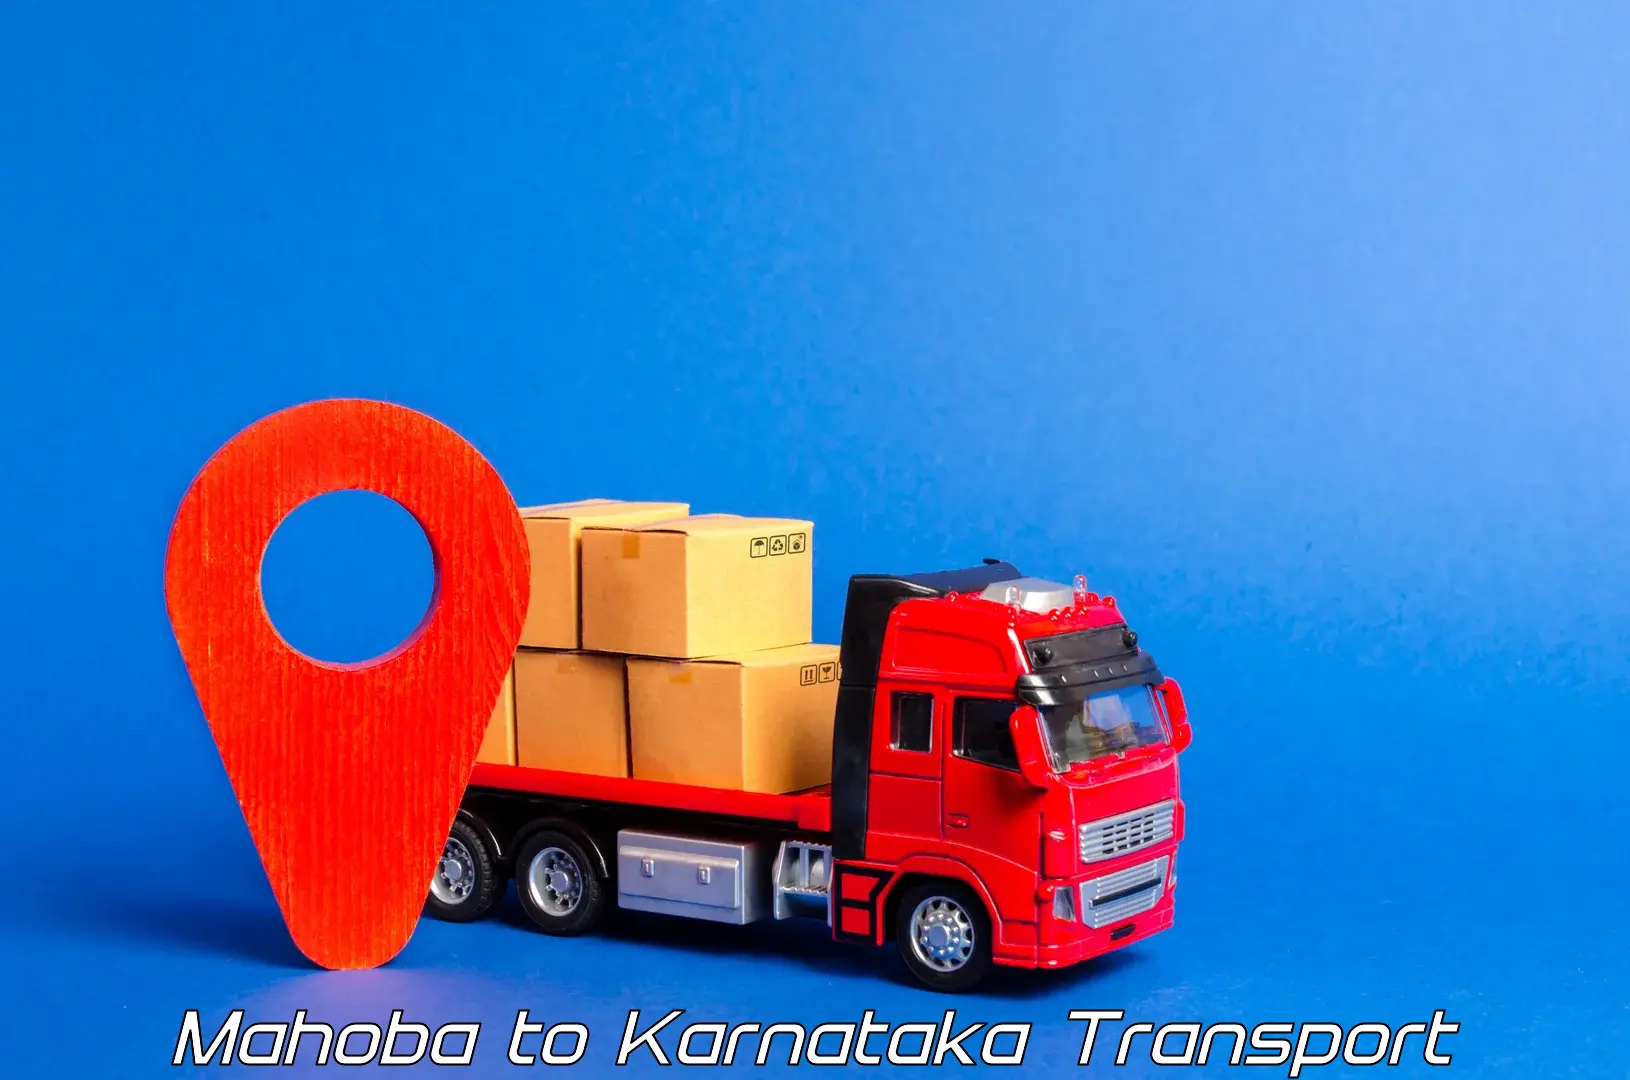 Nearby transport service Mahoba to Krishnarajanagara